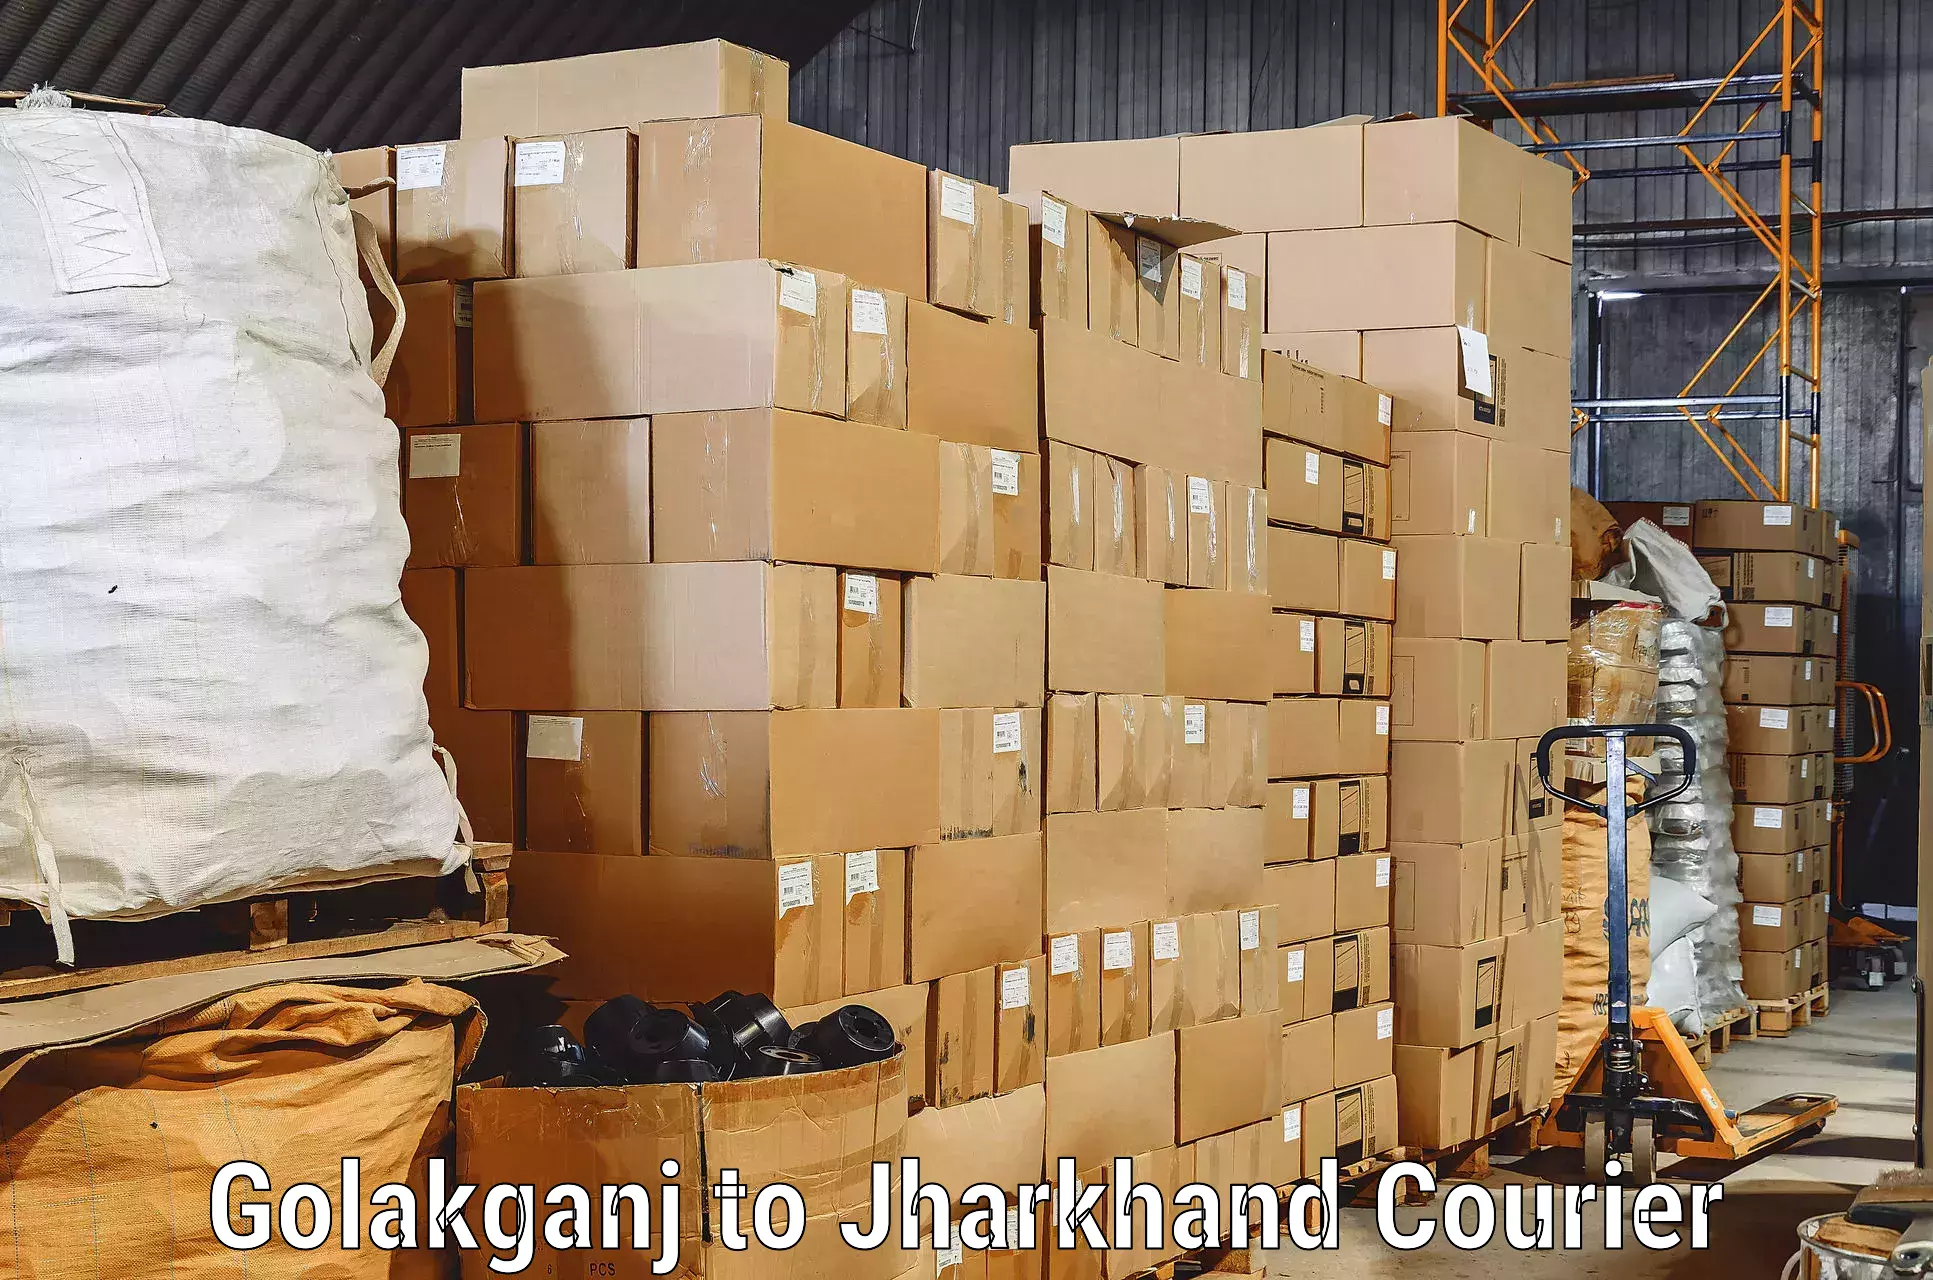 Professional movers Golakganj to Pakur